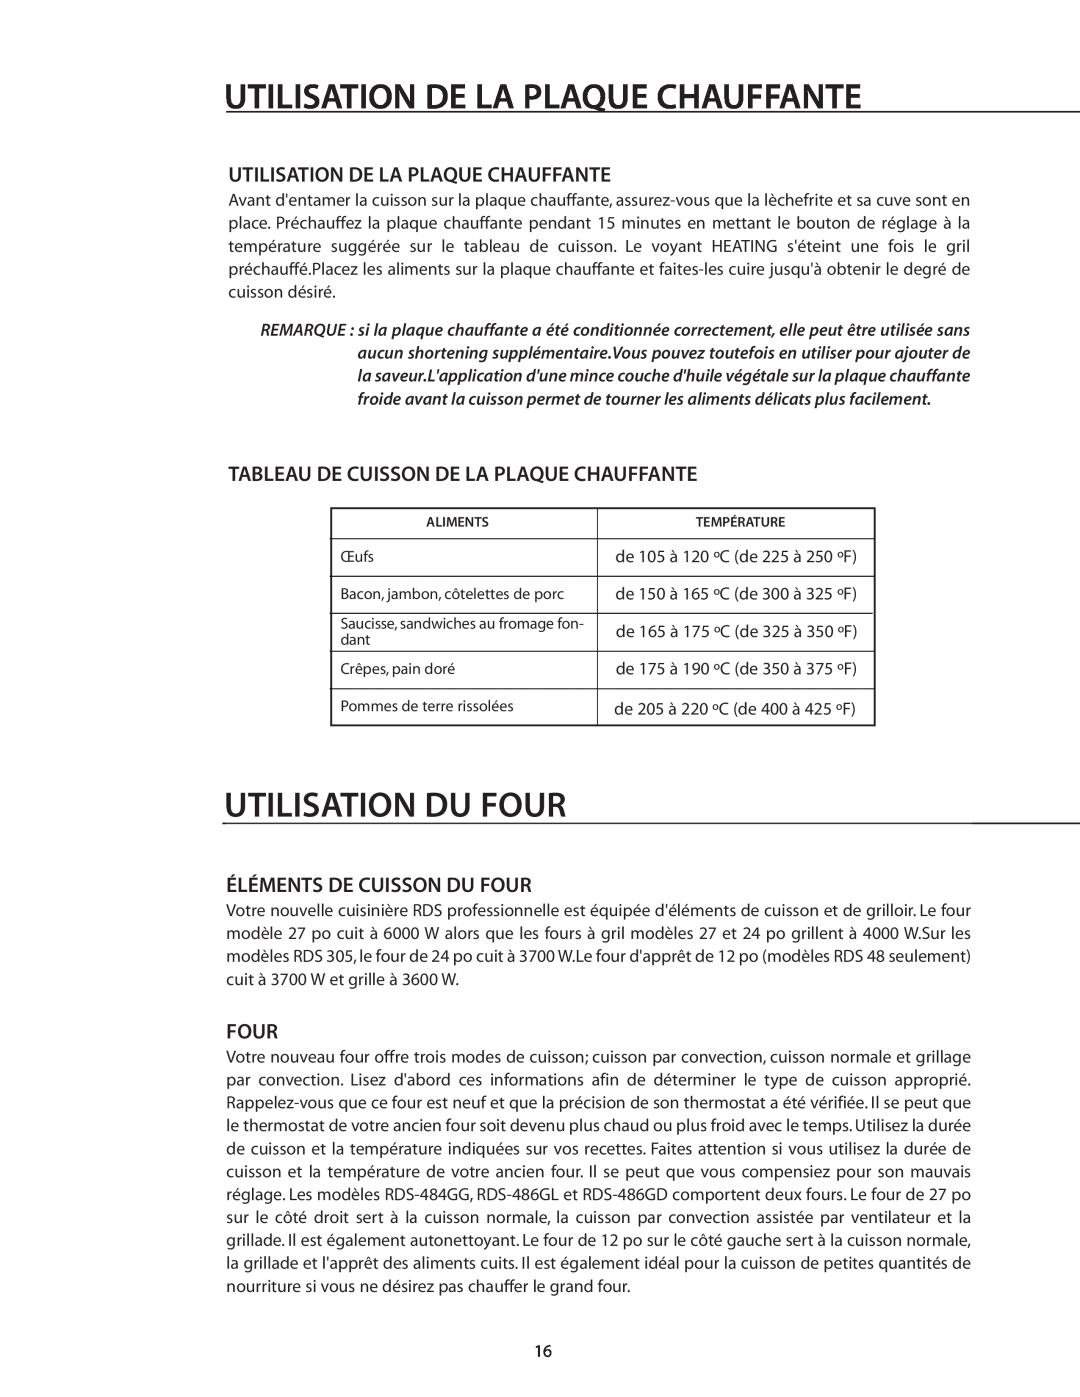 DCS RDS-305 manual Utilisation Du Four, Utilisation De La Plaque Chauffante, Tableau De Cuisson De La Plaque Chauffante 